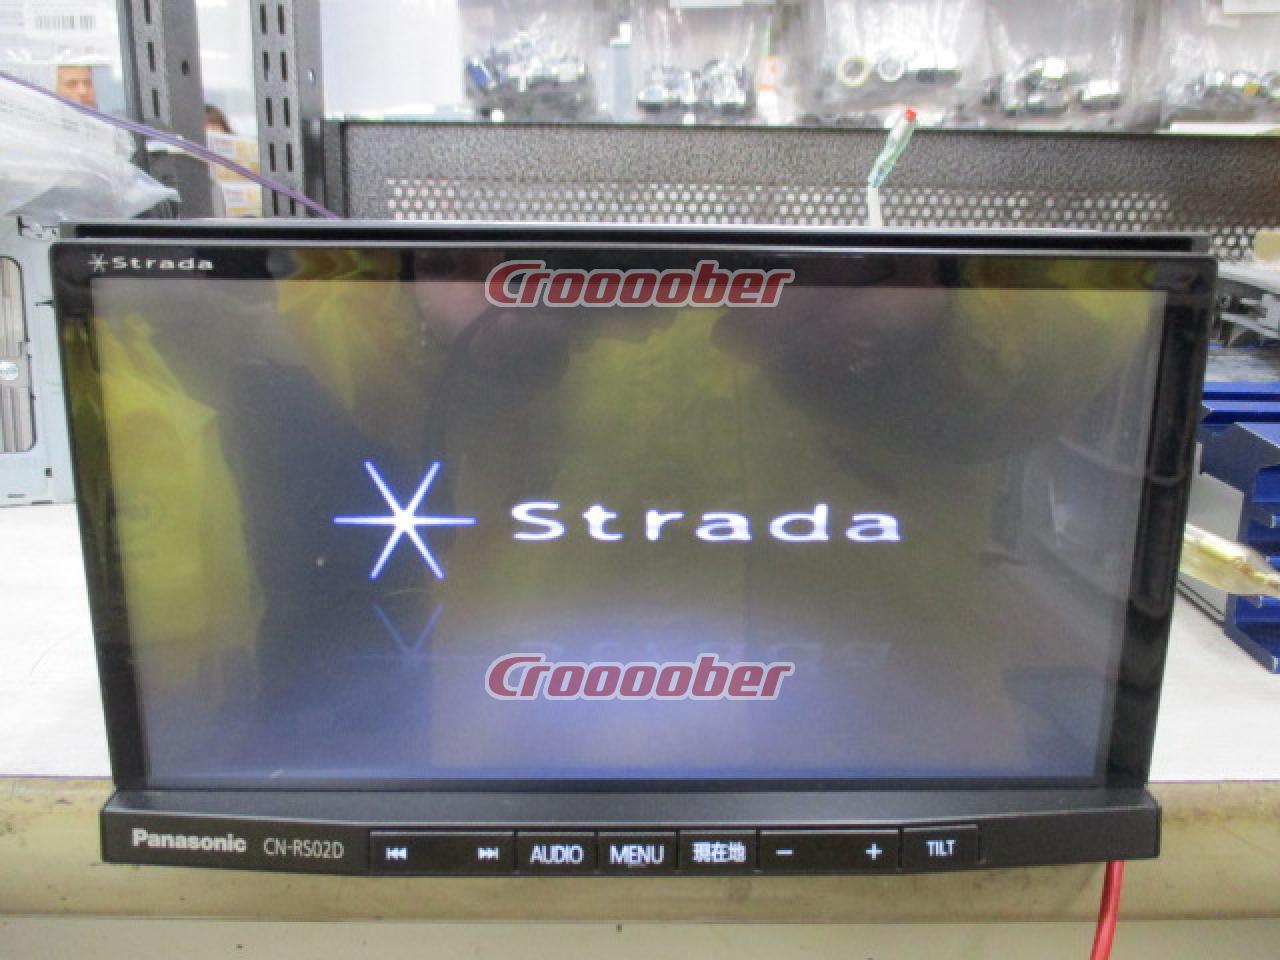 Panasonic * Strada CN-RS02D Terrestrial Digital Broadcasting 